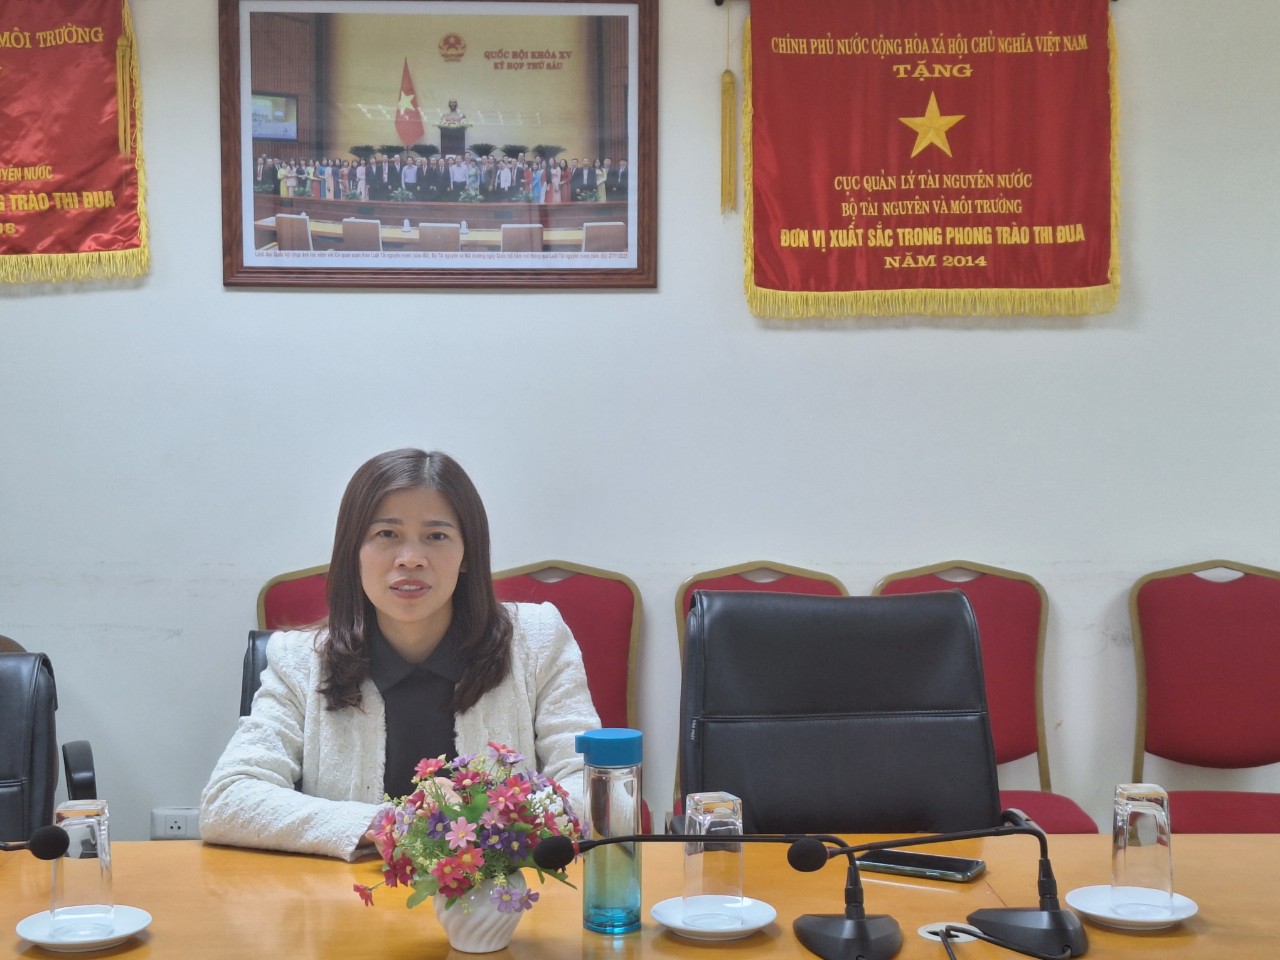 Bà Nguyễn Thị Phương Hoa, trưởng phòng quản lý lưu vực sông Nam Trung Bộ, Cục quản lý tài nguyên nước, Bộ Tài Nguyên và Môi trường